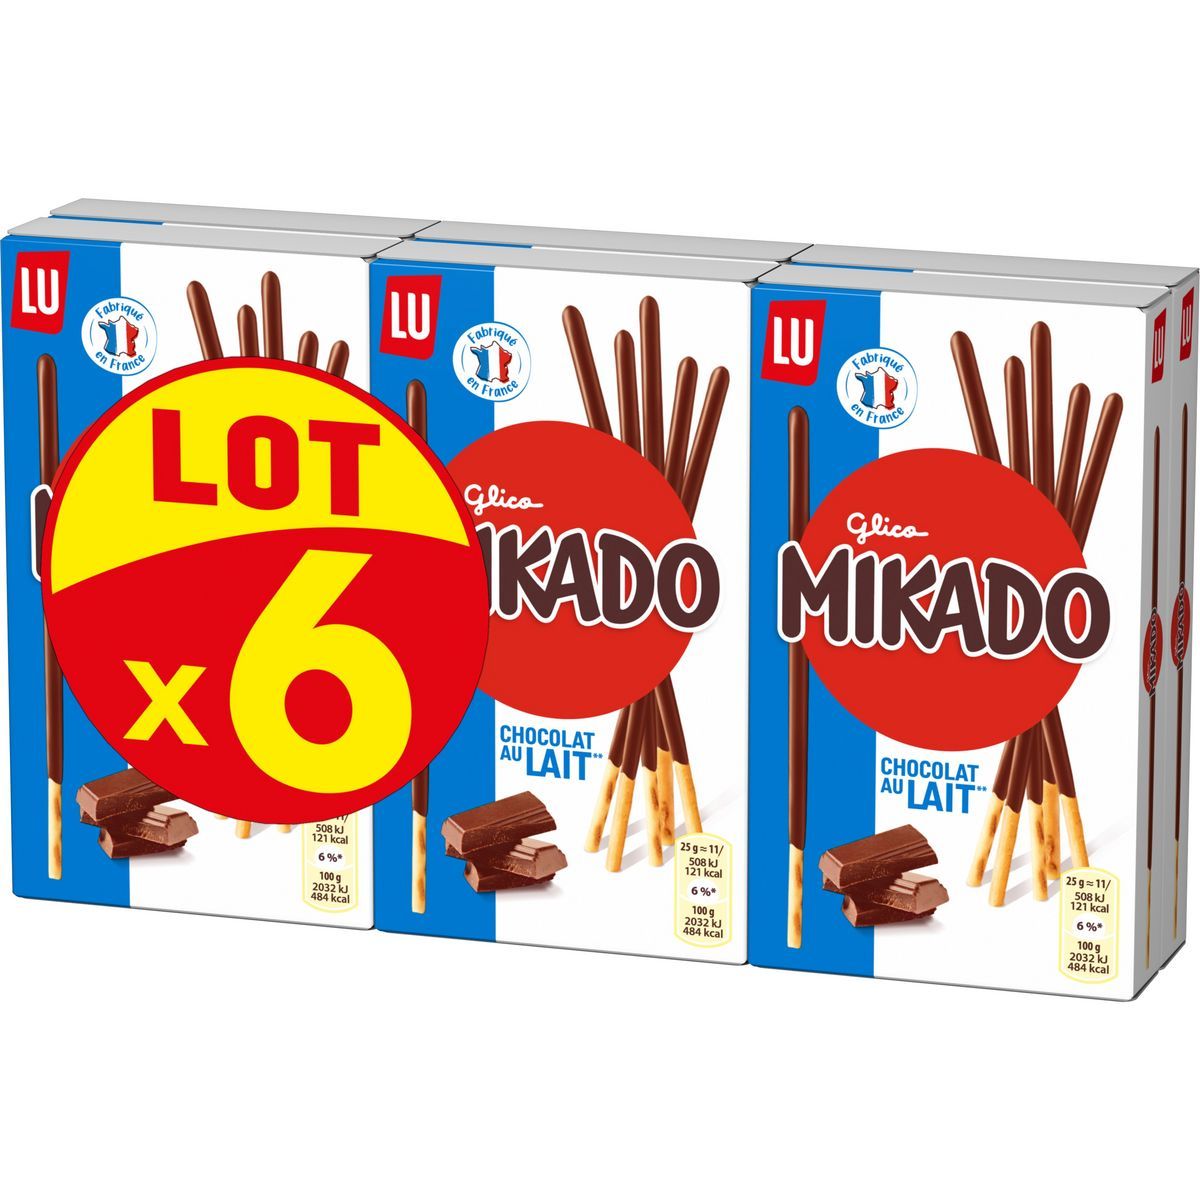 MIKADO DU offre à 4,52€